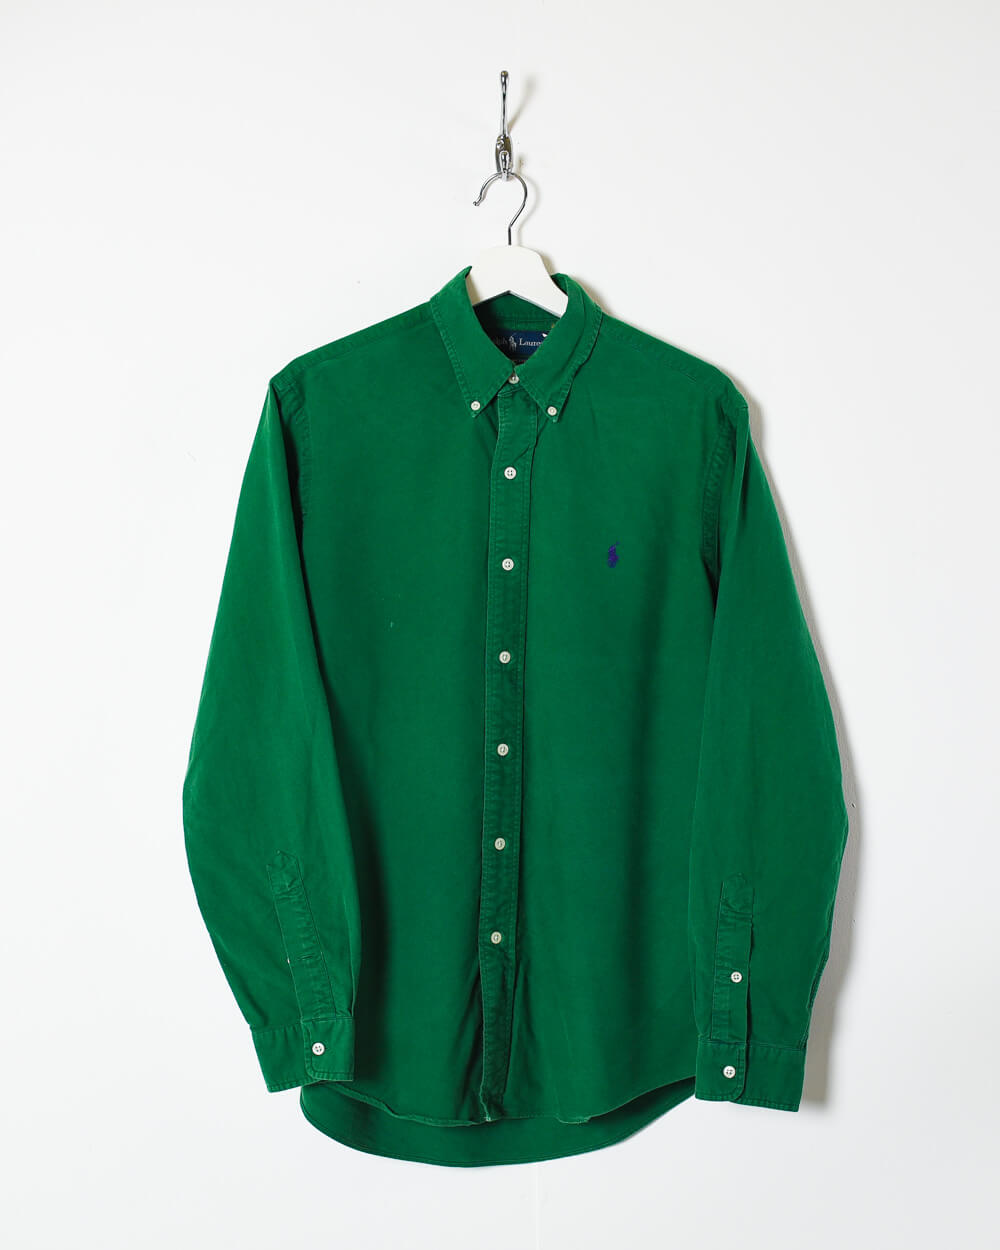 Green Ralph Lauren Shirt - Medium